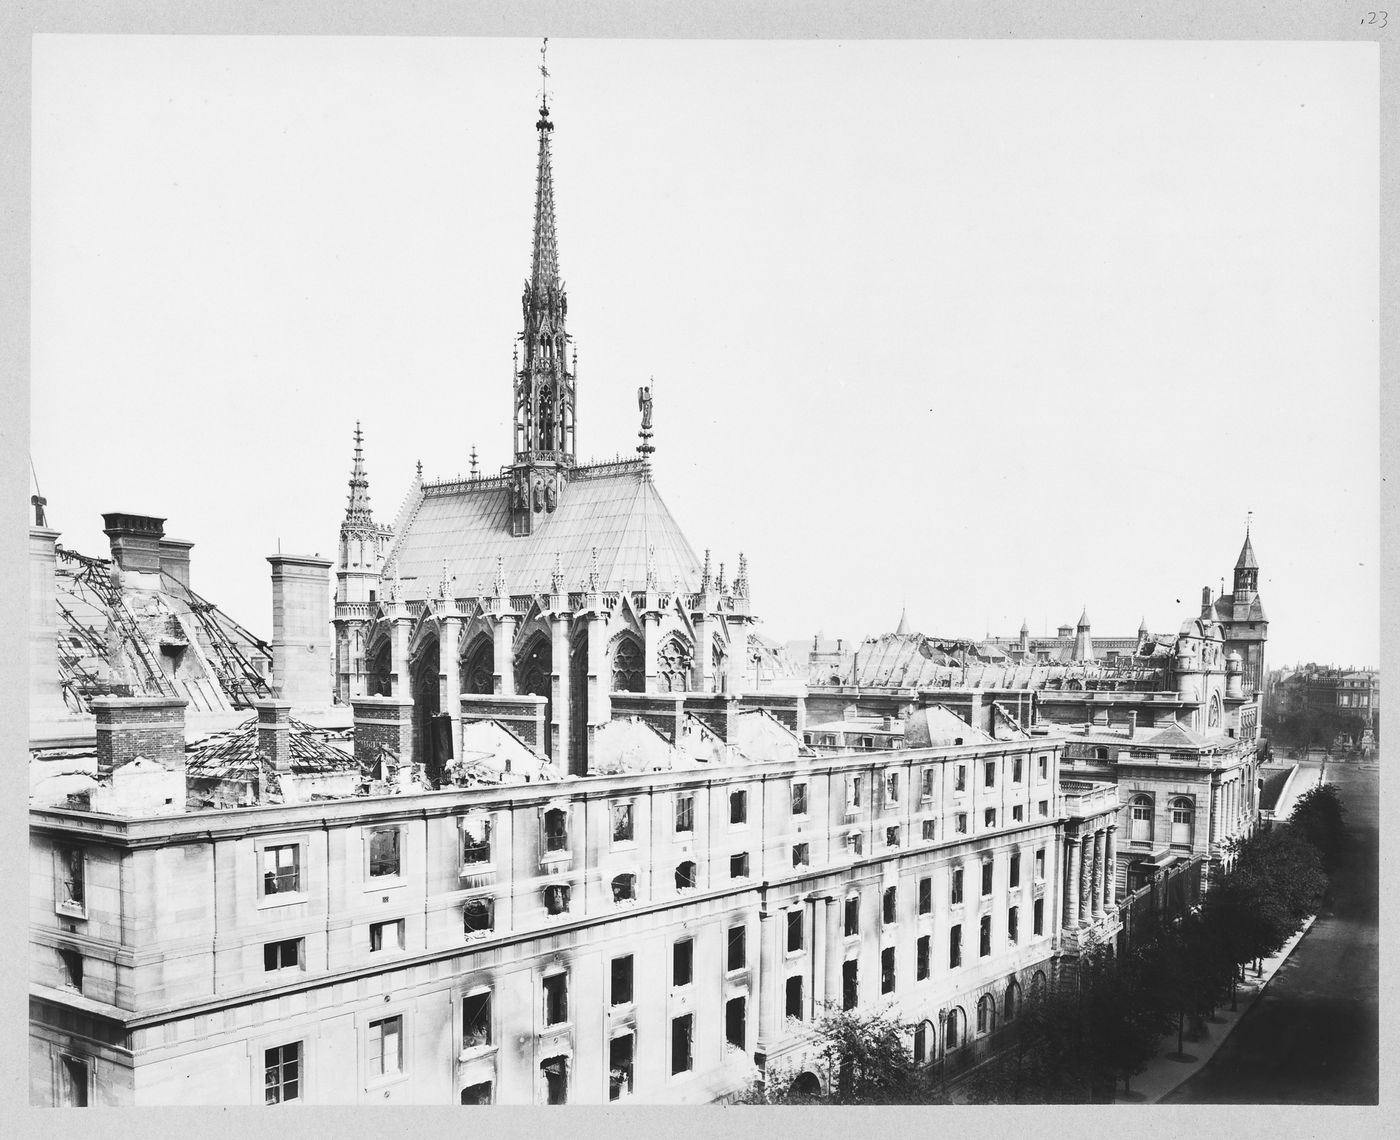 View of the Sainte-Chapelle and Palais de Justice after the Paris Commune, Paris, France